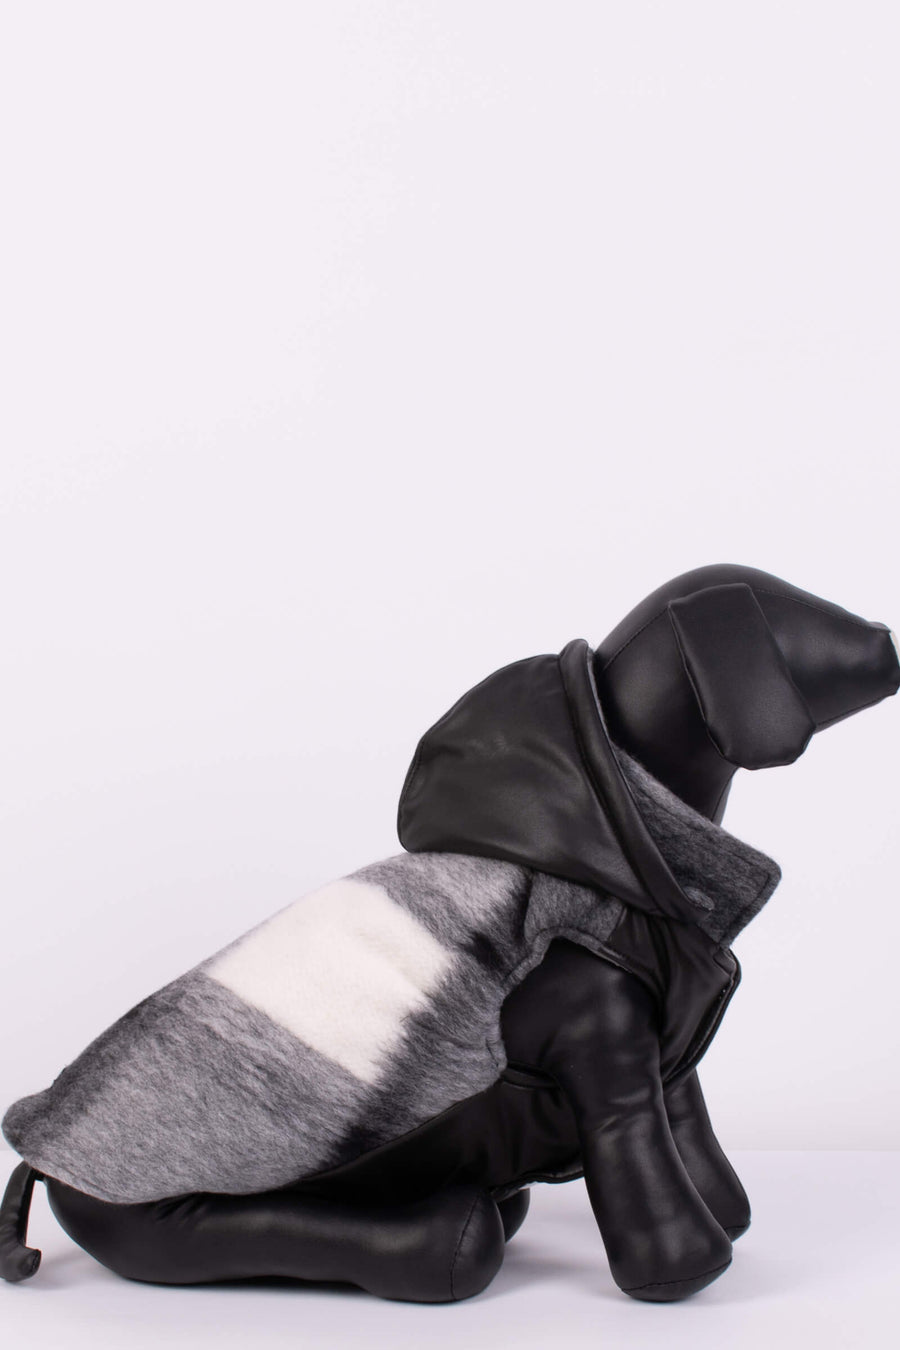 Карирана кучешка дреха с кожени елементи